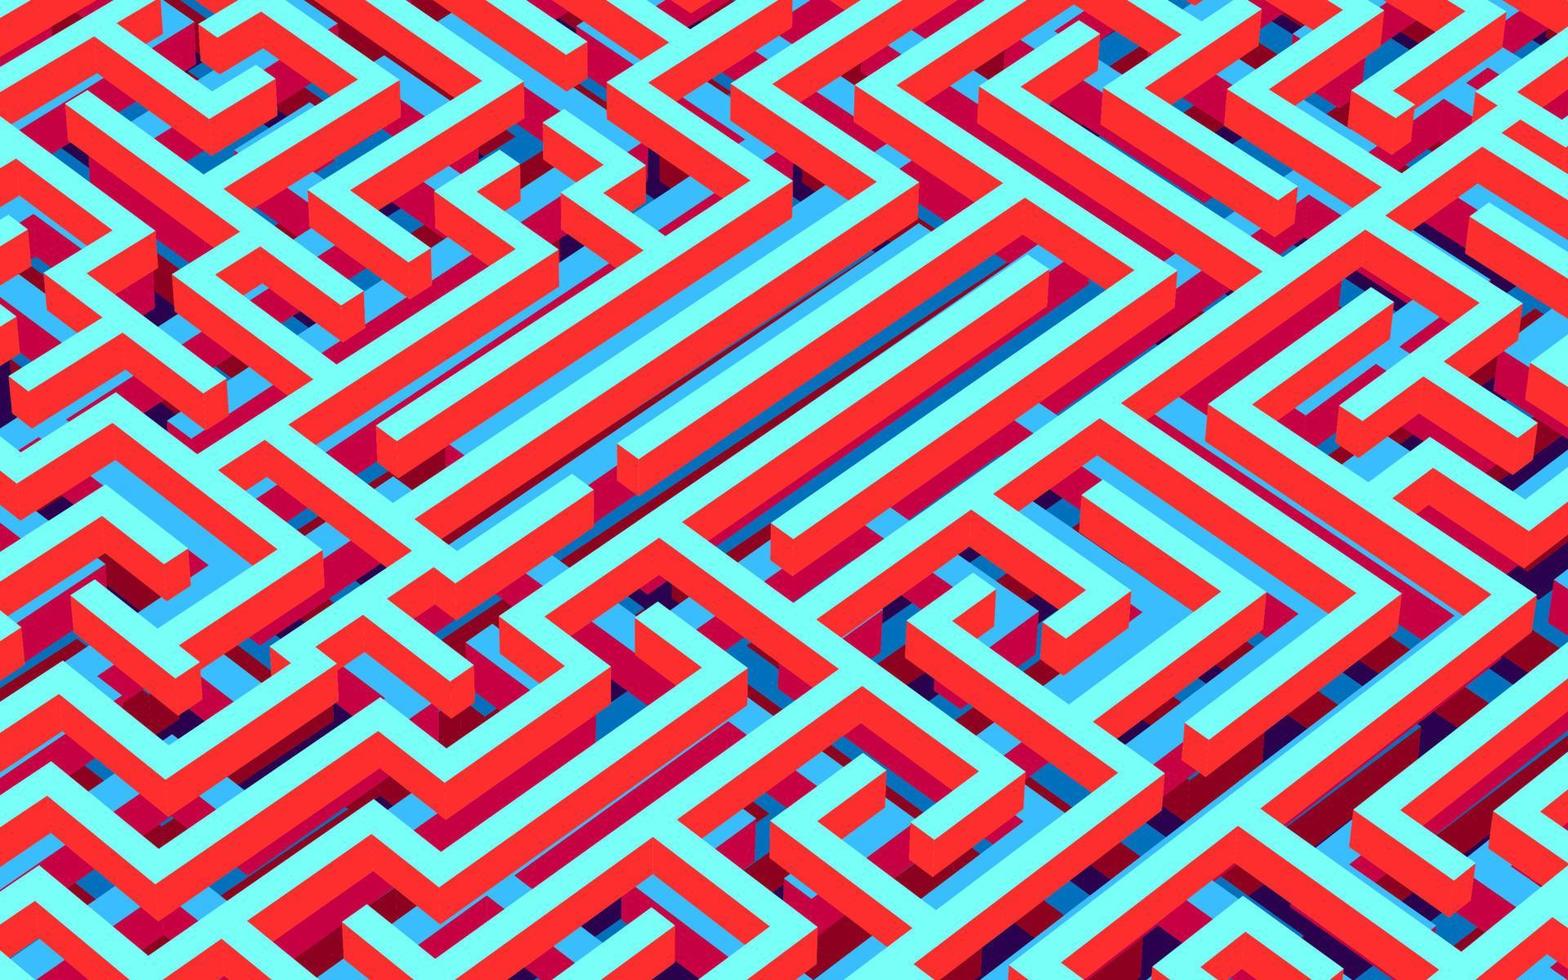 Labyrinth-Hintergrund, 3D-Rendering, isometrische Perspektive. in den Farben blau, rot, orange. buntes vektorlabyrinth, labyrinth mit kontrastfarben. abstrakter Puzzle-Hintergrund. vektor